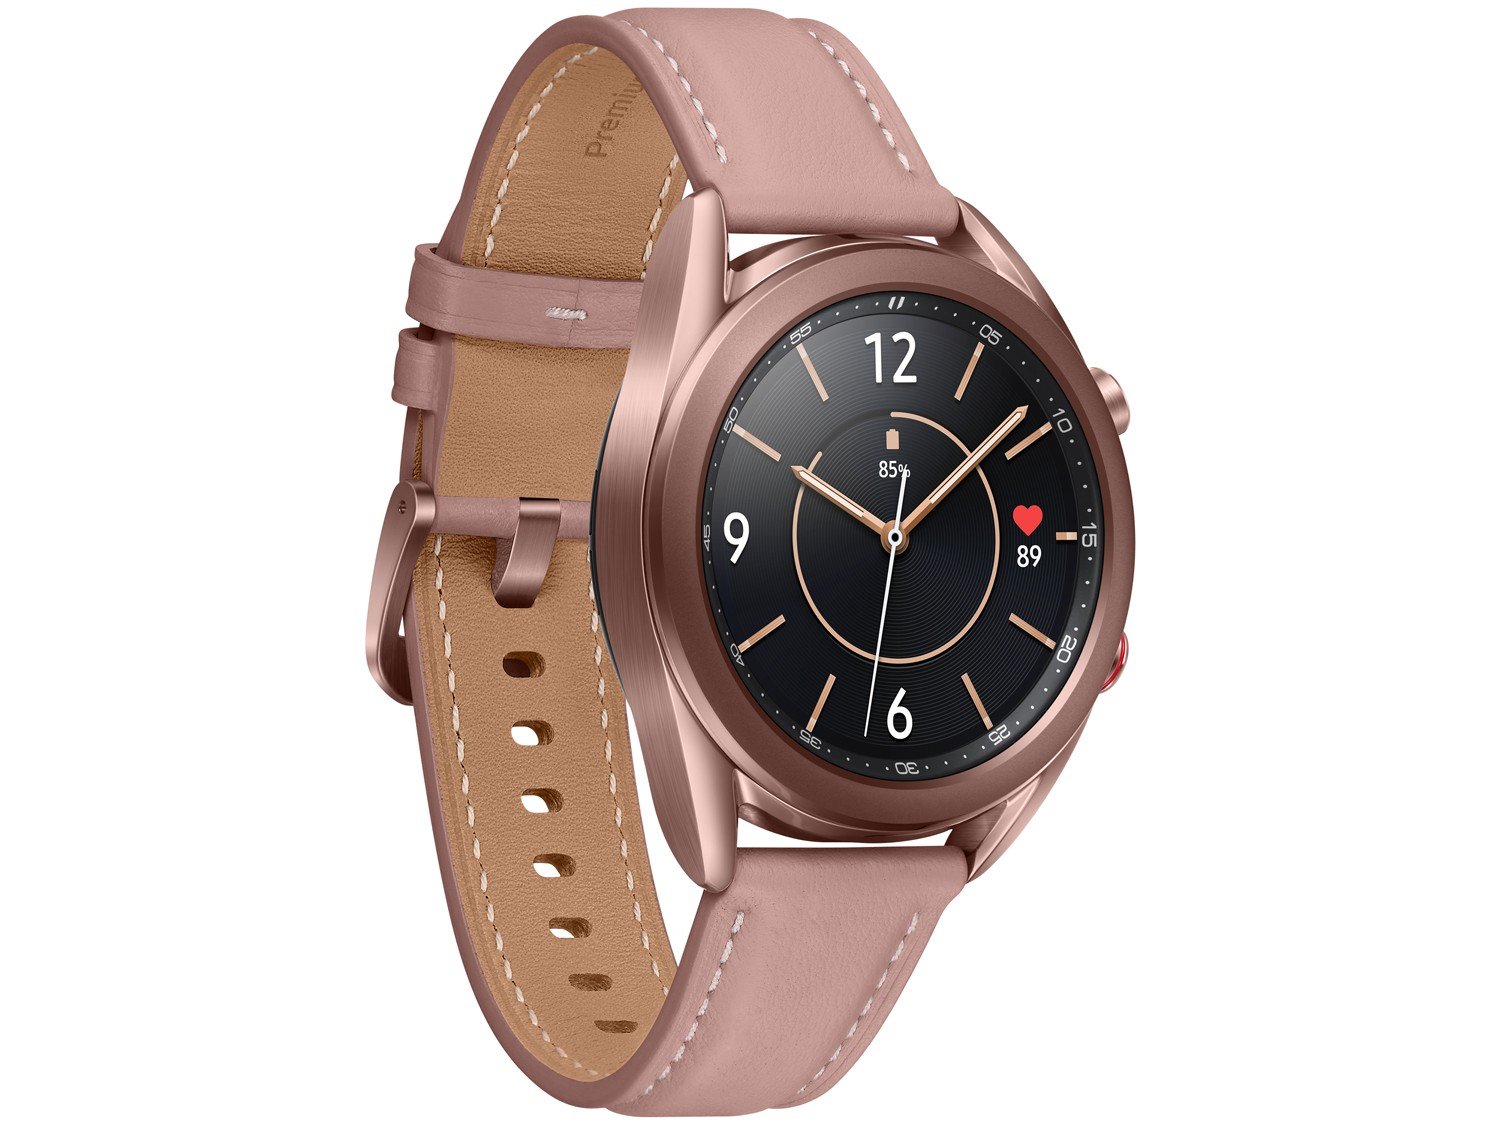 Smartwatch Samsung Galaxy Watch 3 LTE Bronze - Bivolt - 3